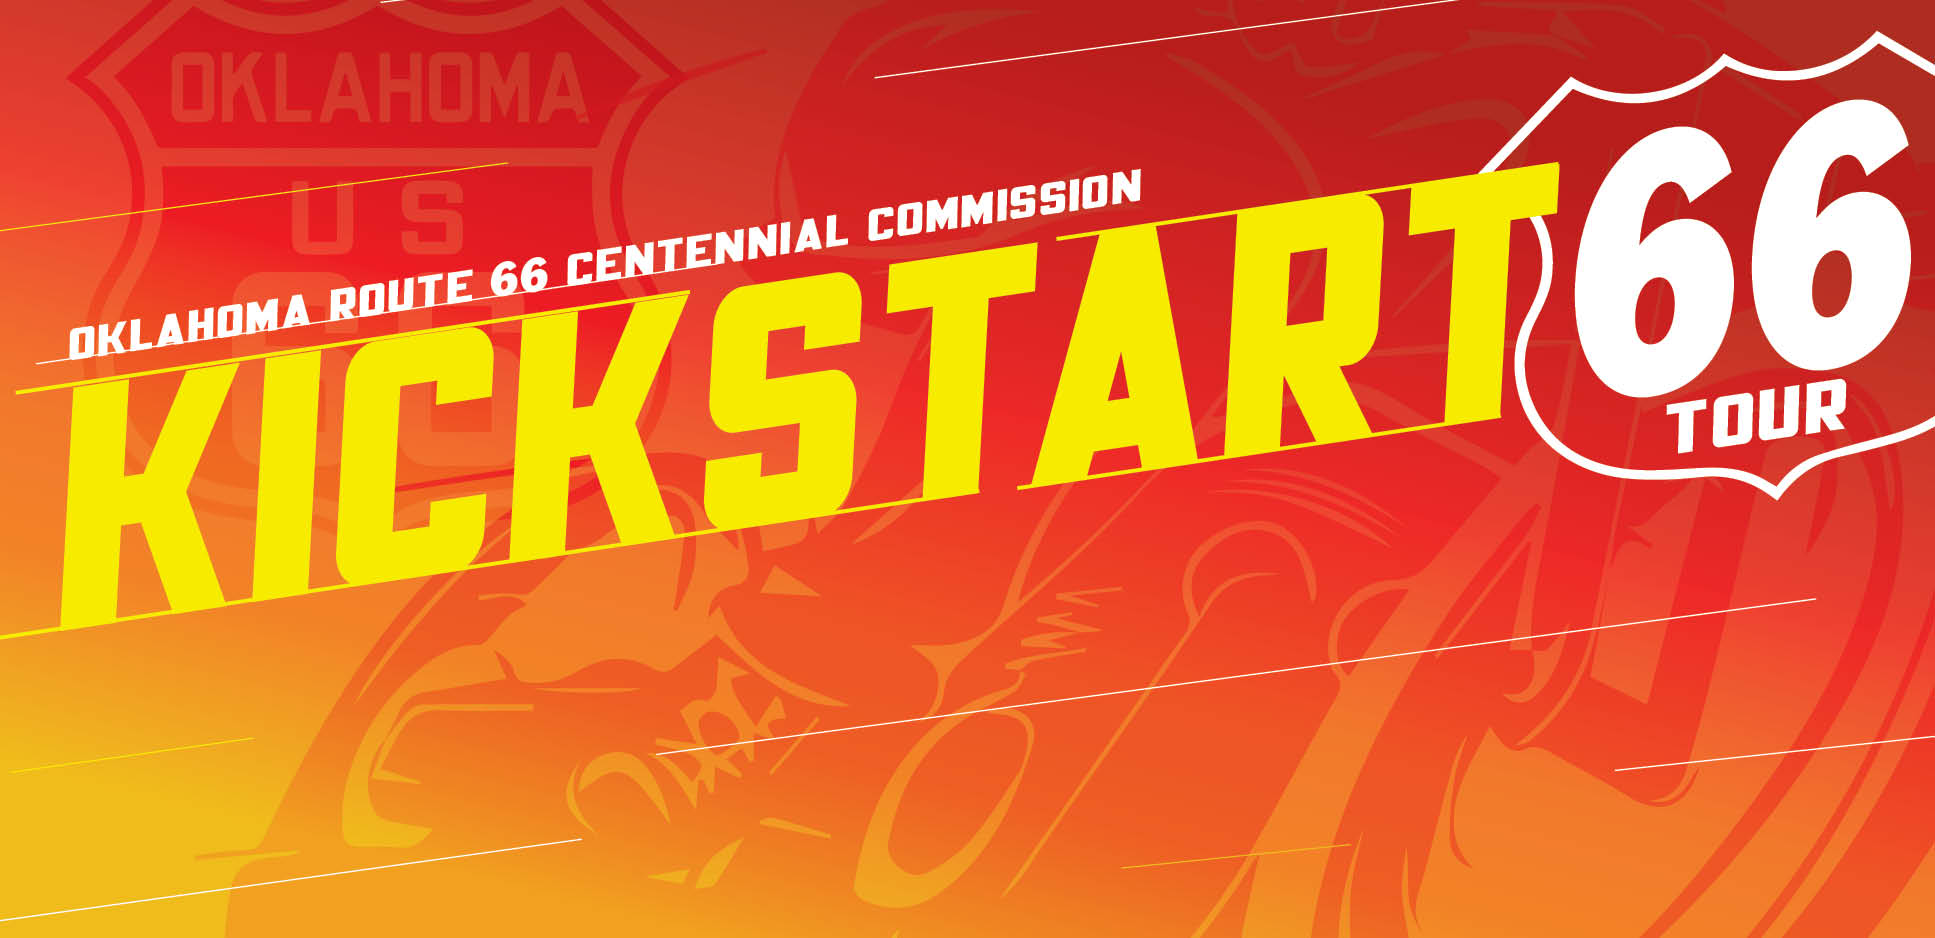 Kickstart 66 Tour An Oklahoma Route 66 Centennial Commission Program